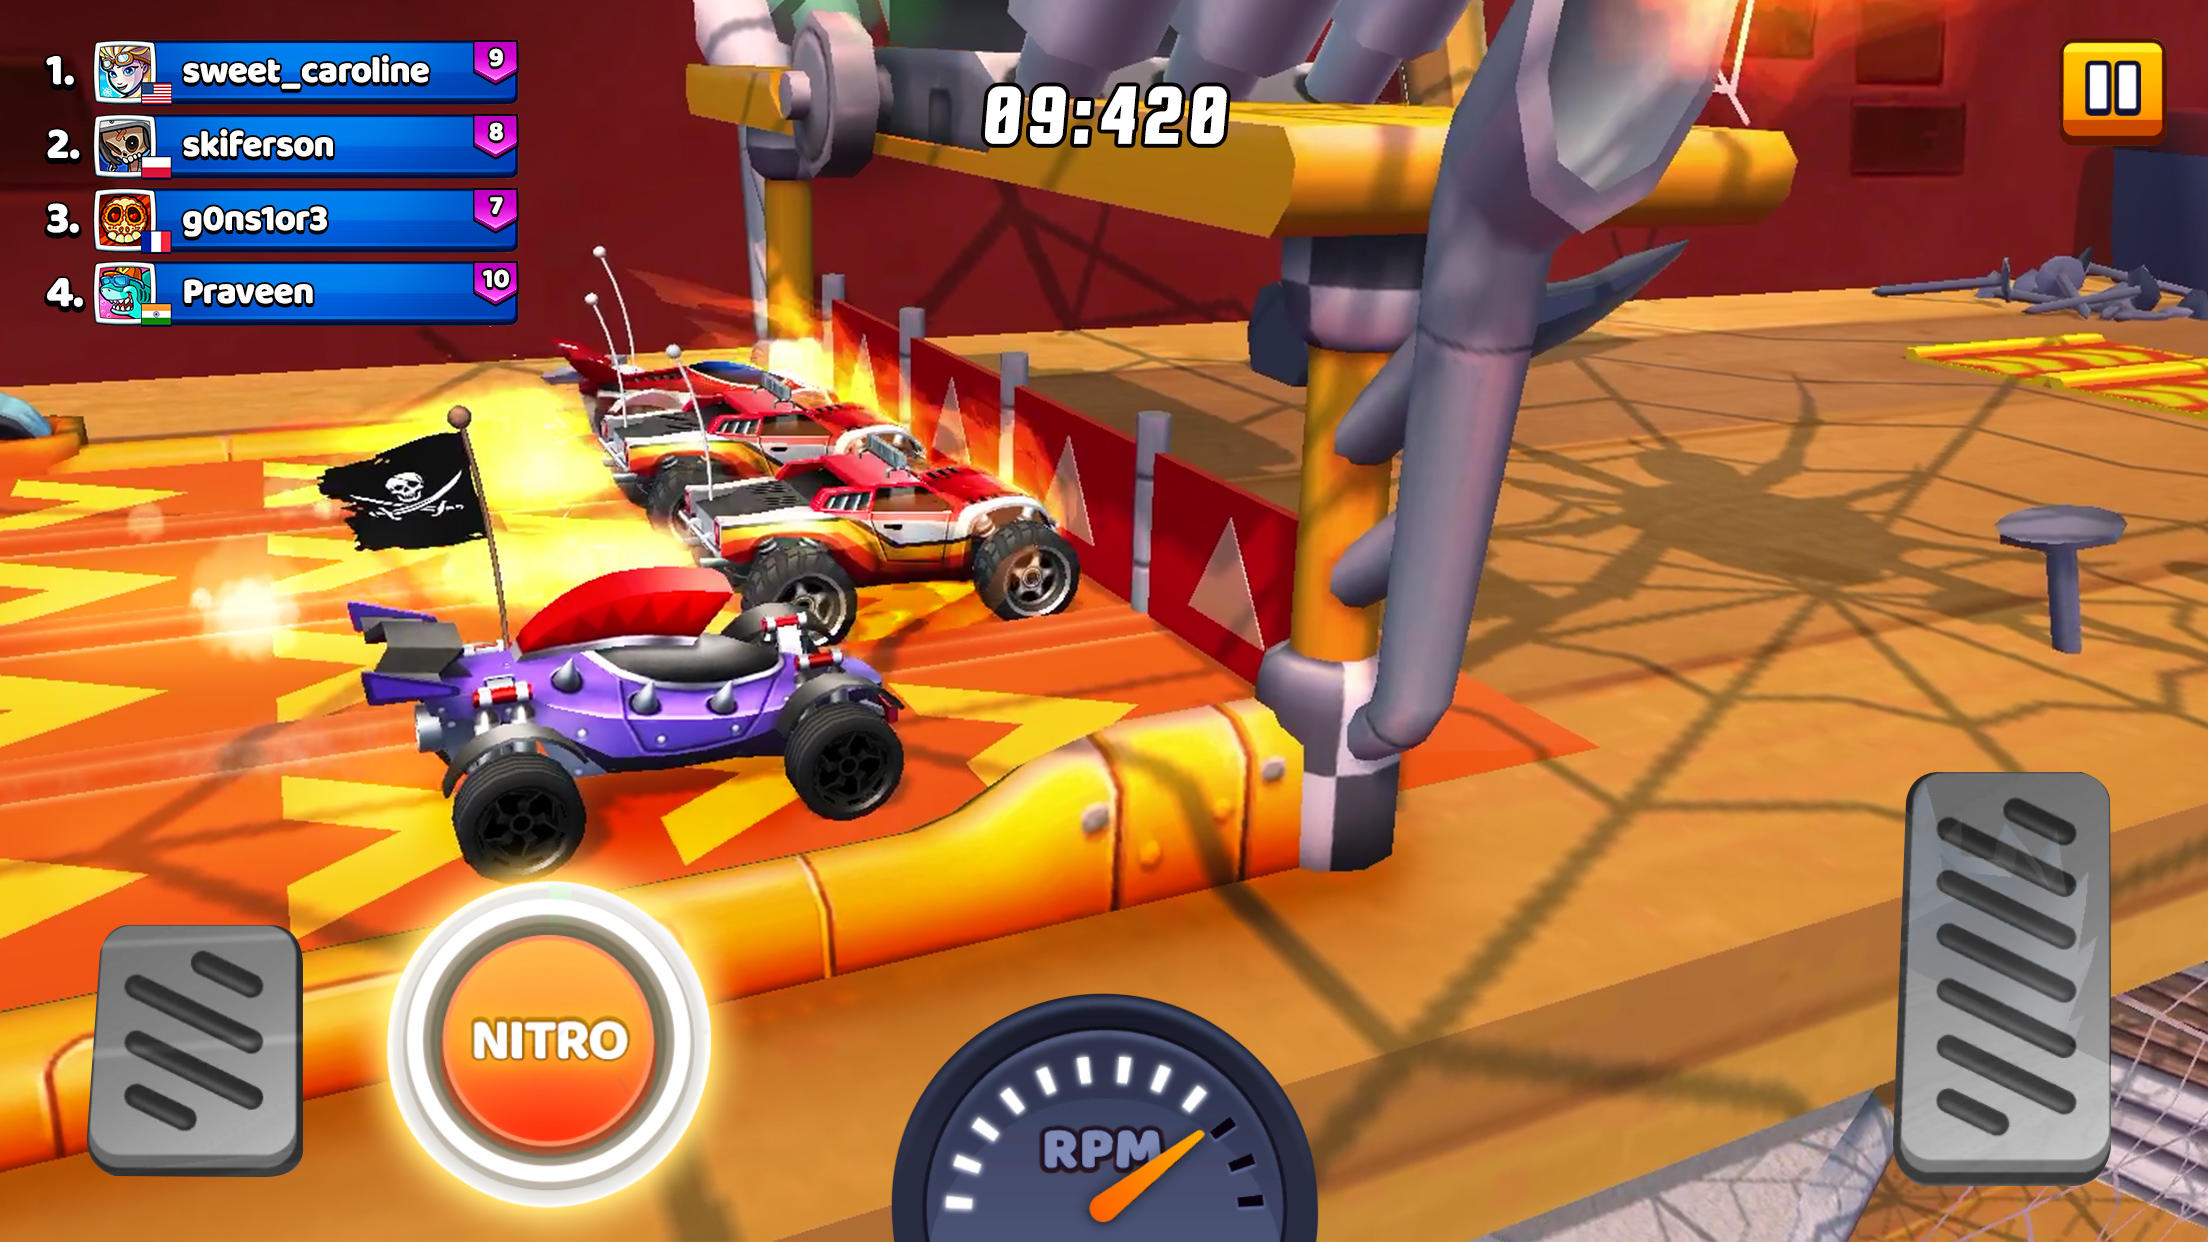 Screenshot 1 of Race Driving Crash jeu 2.0.7